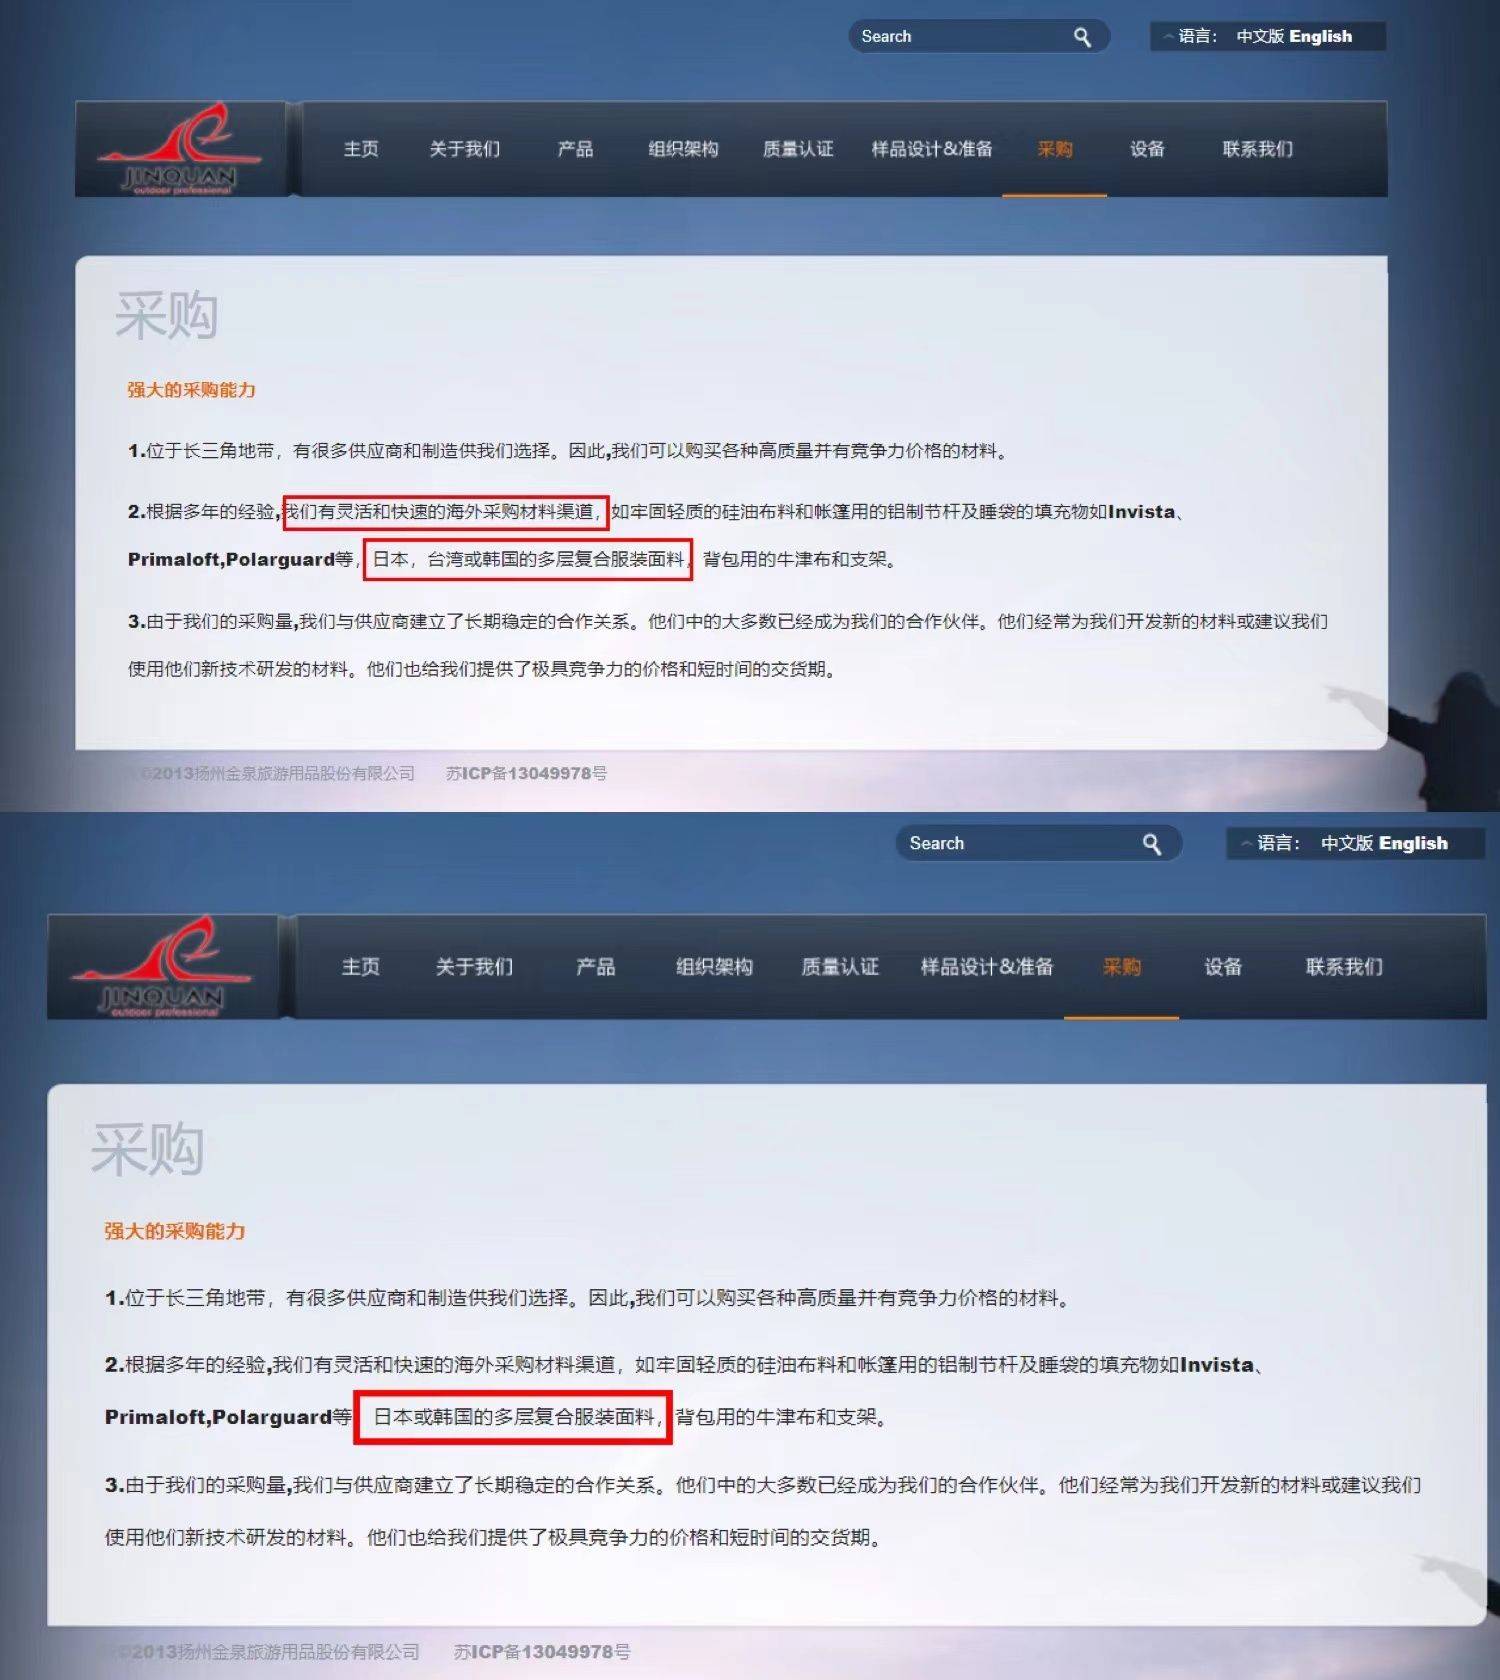 相关|IPO观察｜金泉旅游官网竟将台湾列为海外！被指歧义后秒删